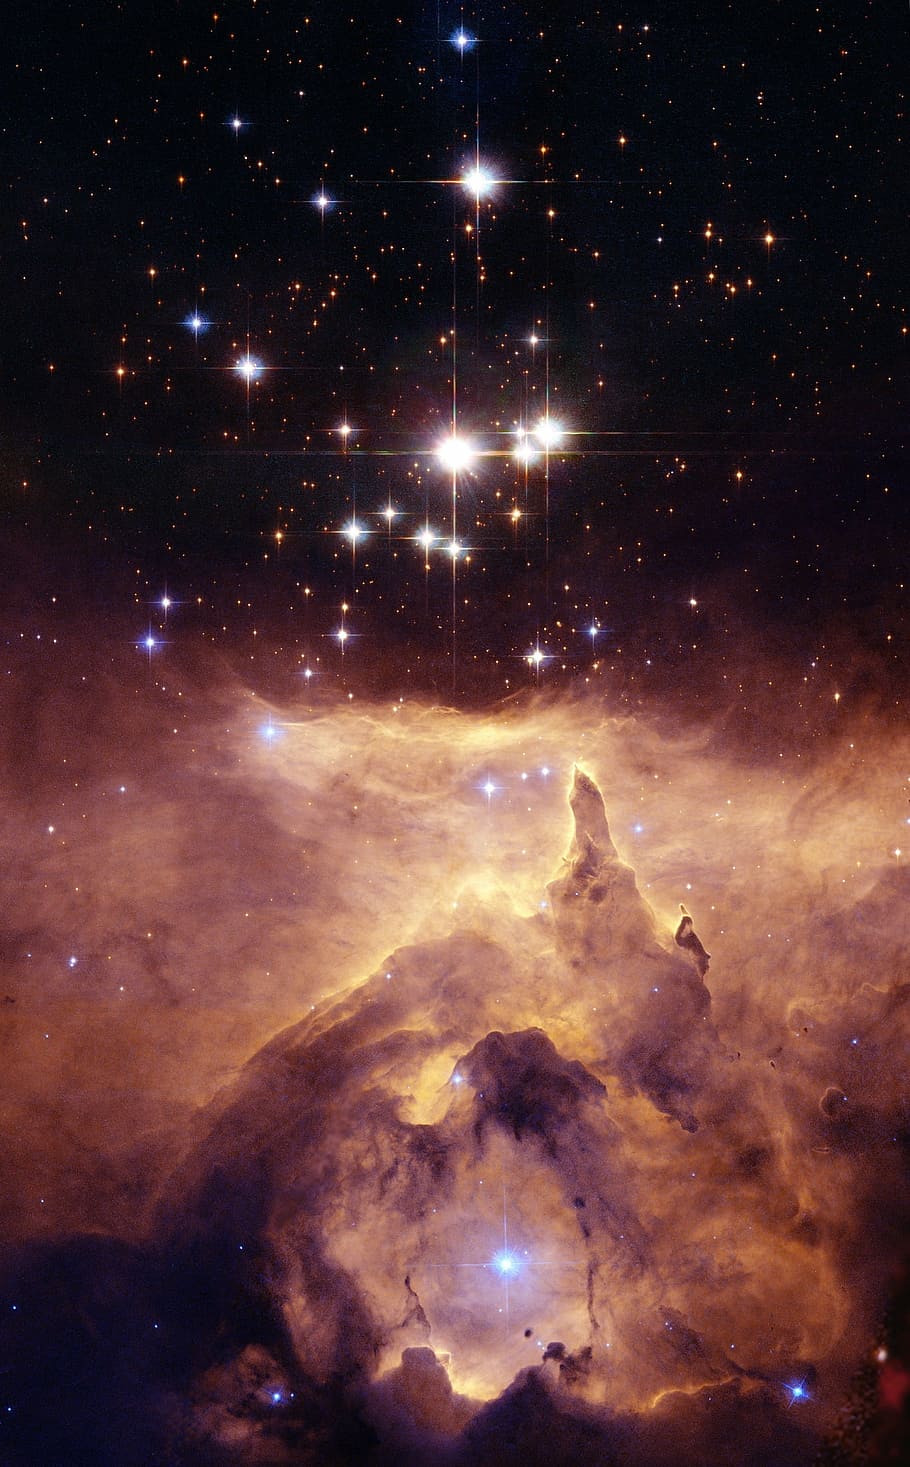 estrella en el cielo, nebulosa de langosta, ngc 6357, nebulosa difusa, espacio, cosmos, universo, celeste, estrellas, luces